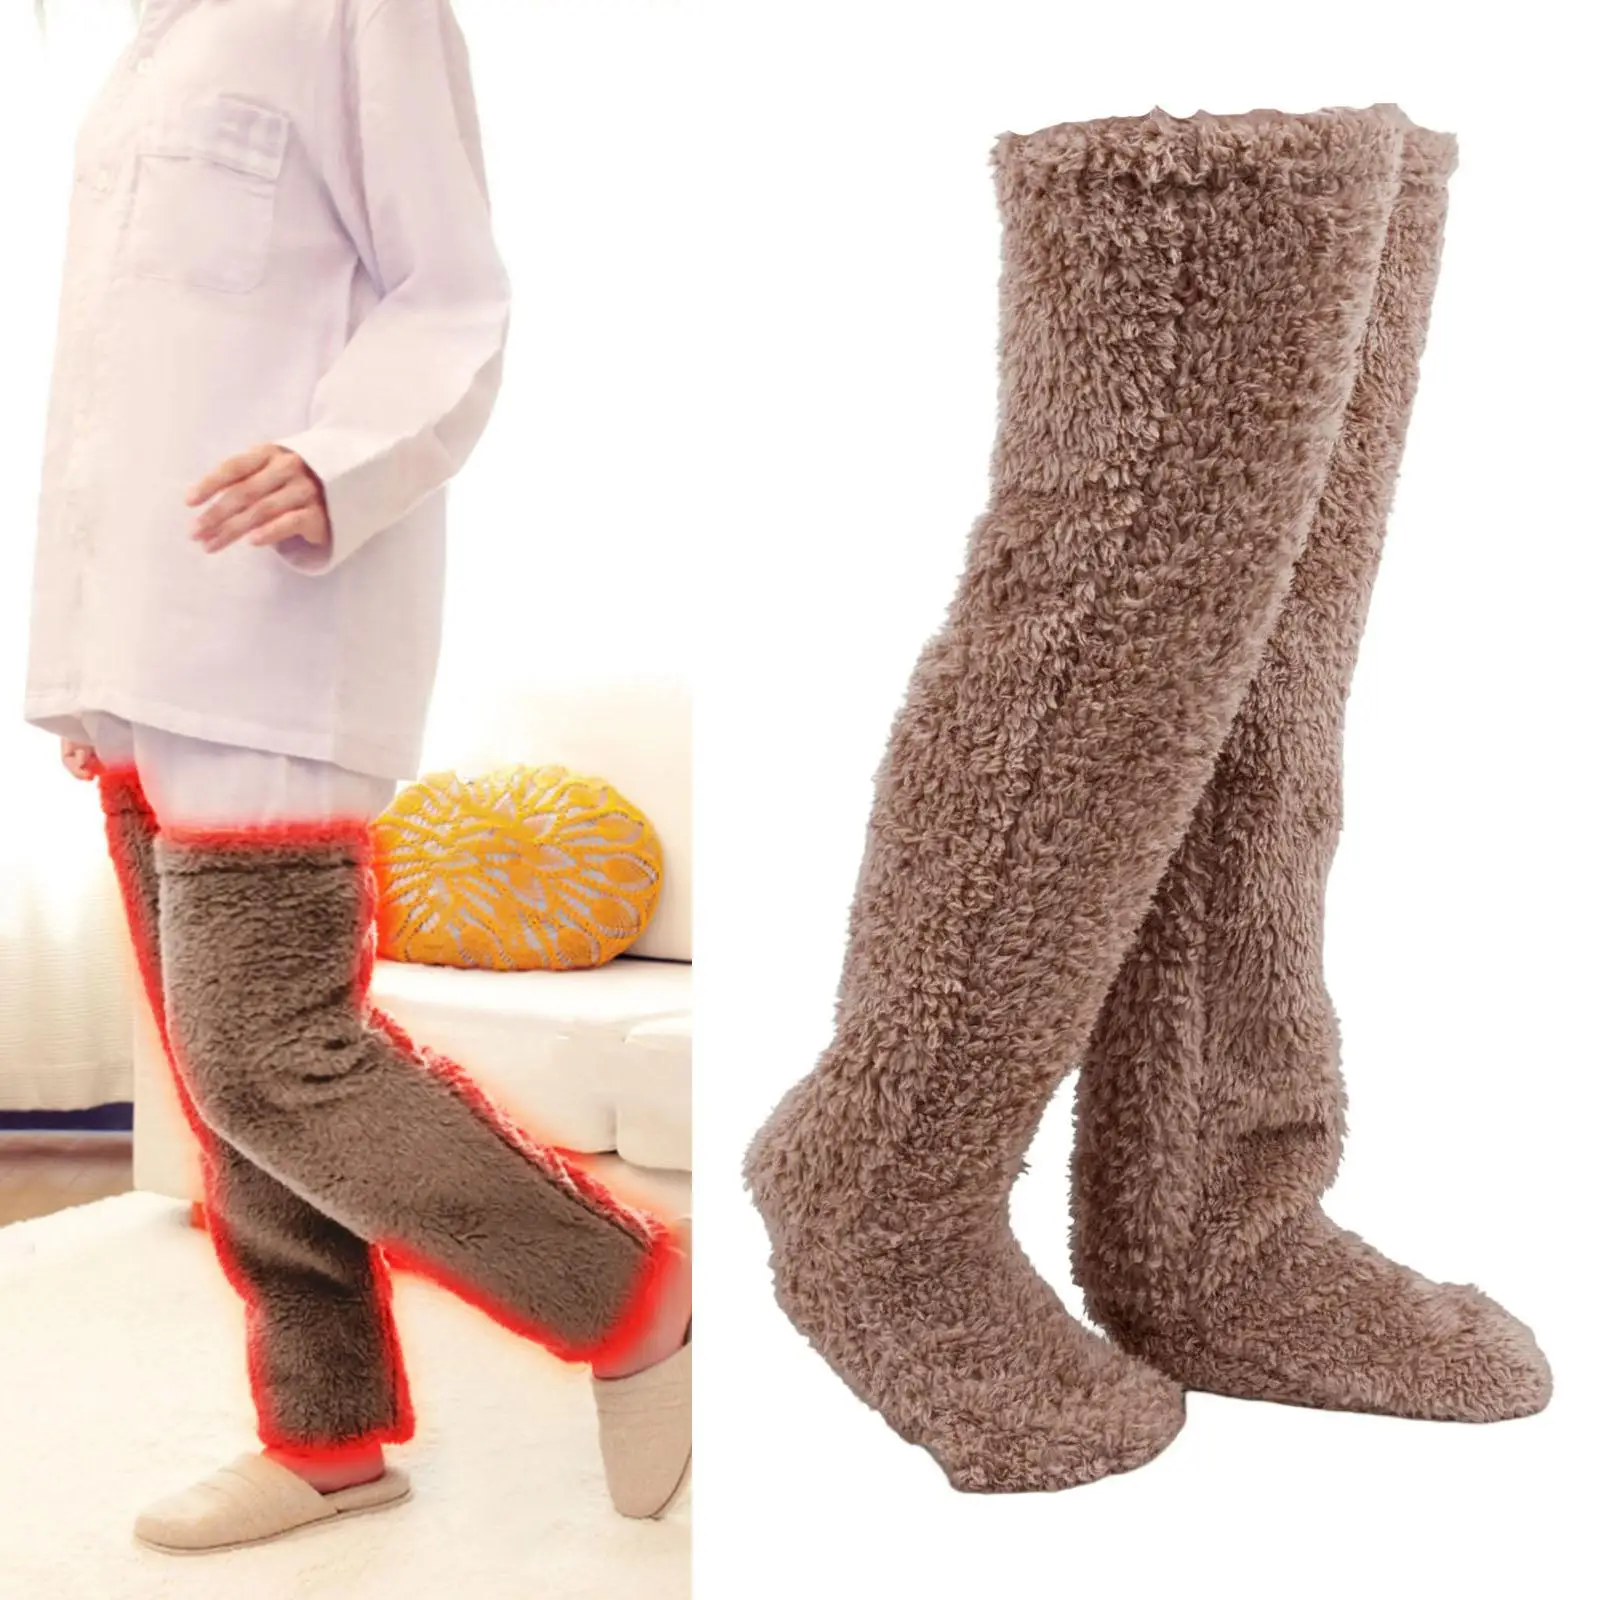 Thigh High Socks Over Knee Fuzzy Socks Boot Socks Stocking Legging Stocking Plush Leg Warmers for Office Living Room Women Kids